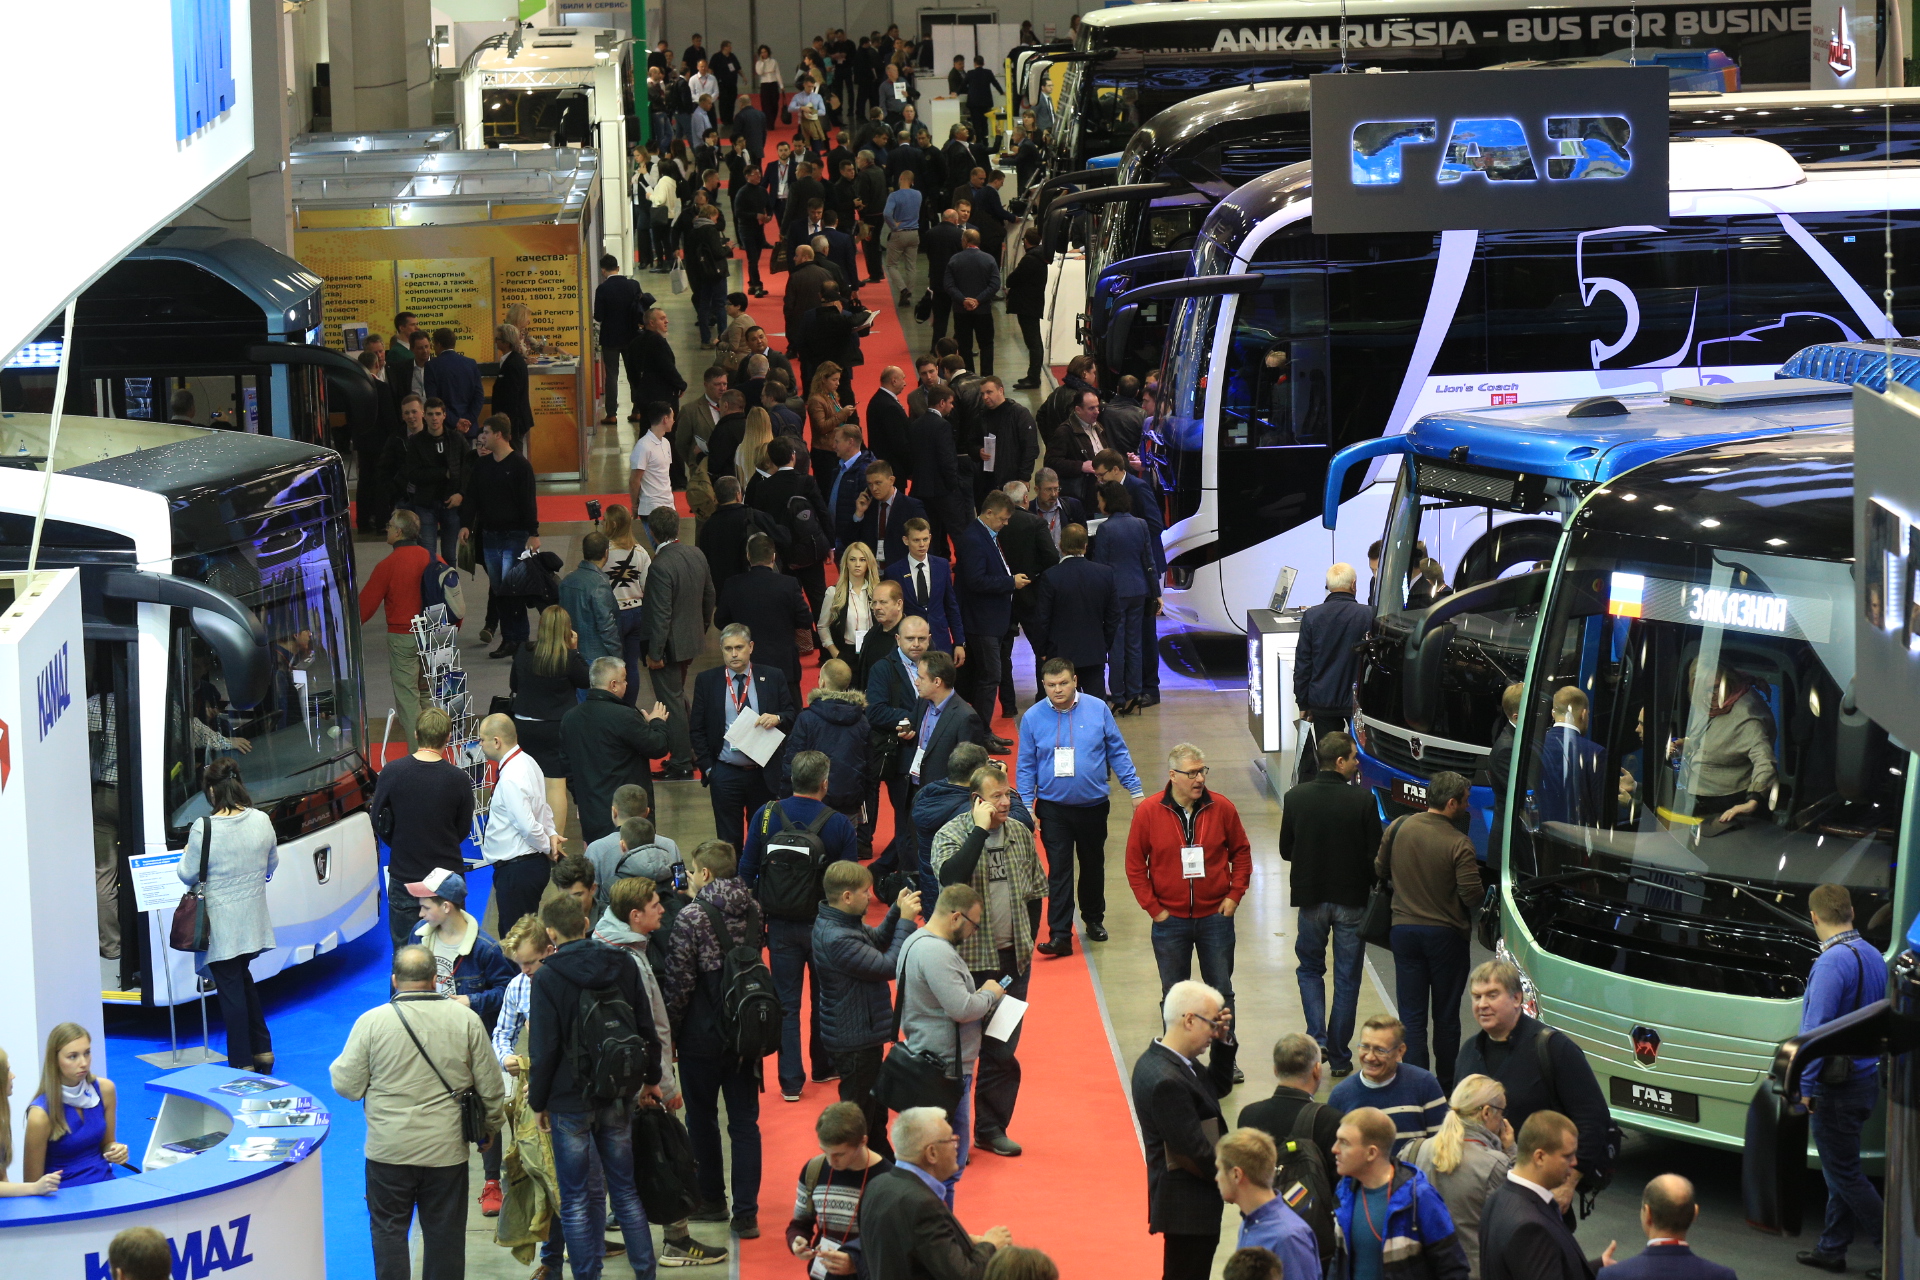 с 29 ноября по 01 декабря 2022 г. в Москве в МВЦ «Крокус Экспо» состоится крупнейшая в России и Восточной Европе выставка автобусной техники - BW Expo